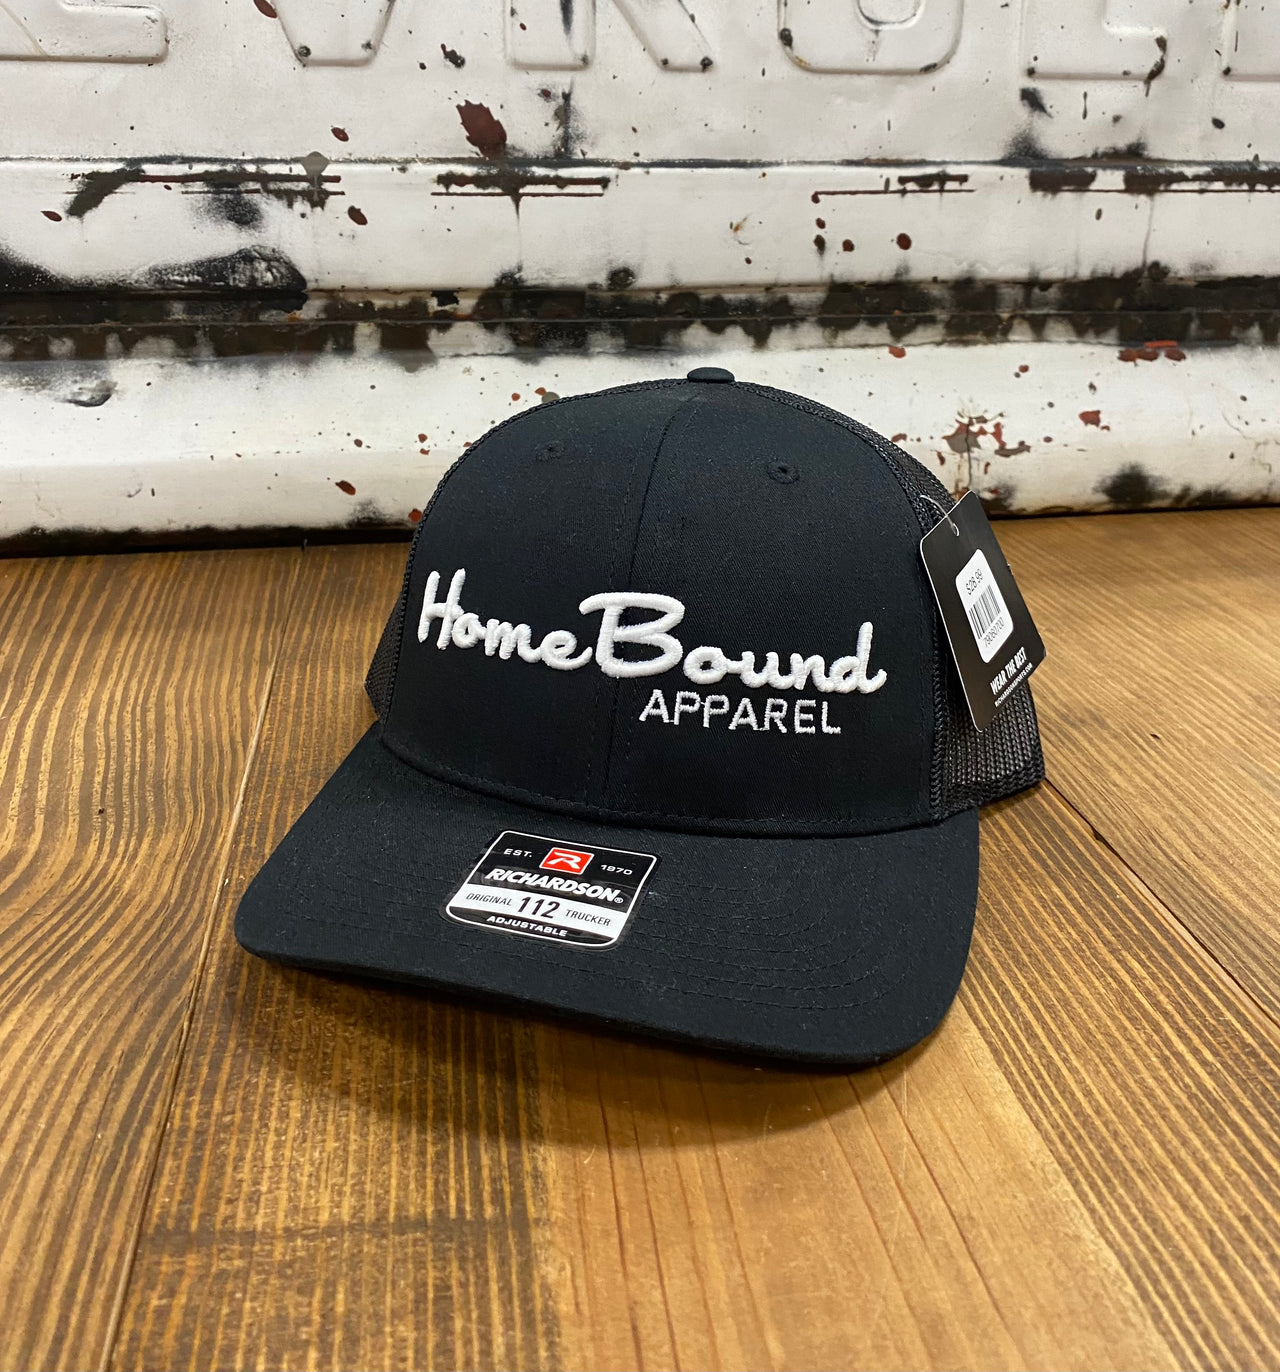 3D Home Bound Apparel Cap